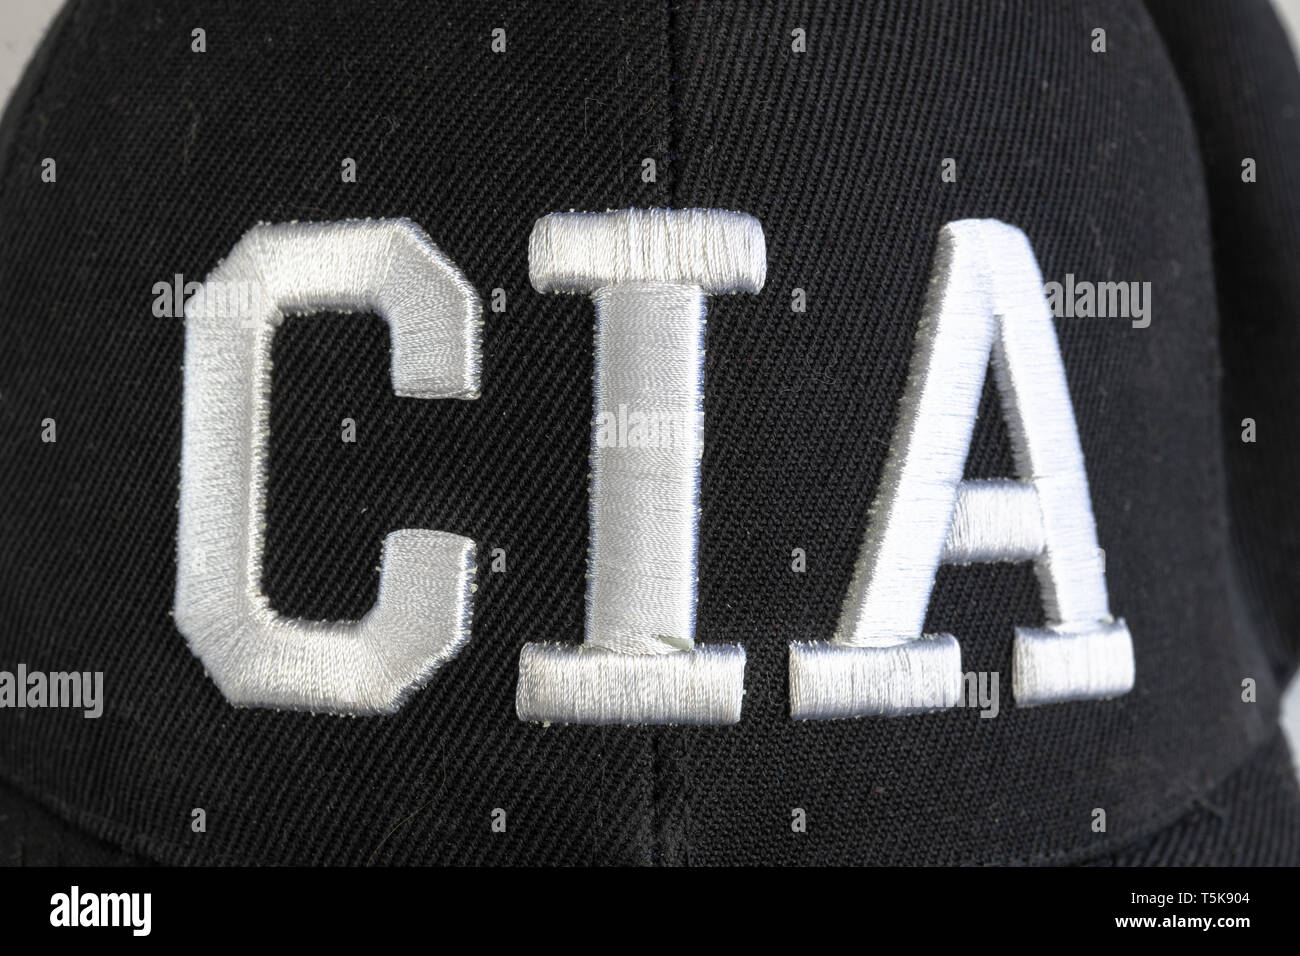 Texte du logo de l'ICA qui est l'acronyme de Central Intelligence Agency. Vue frontale de l'texte brodé Banque D'Images